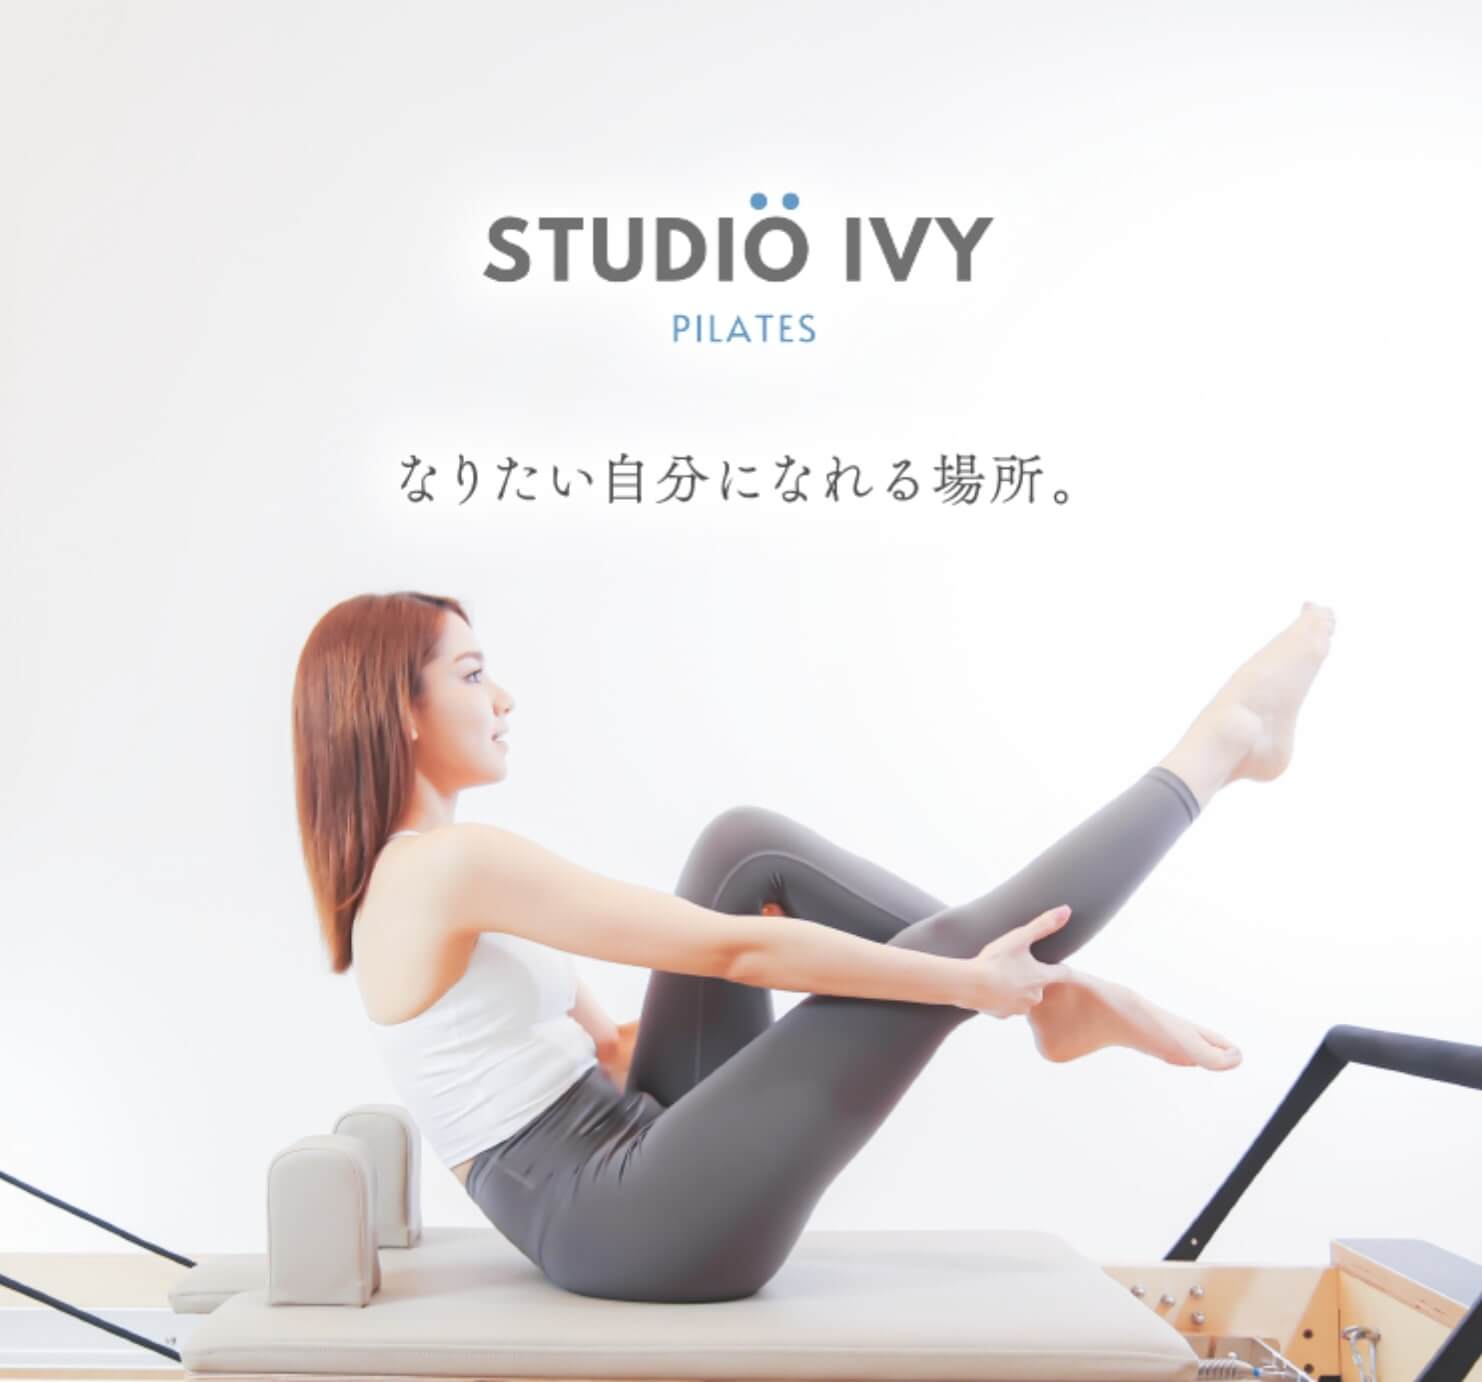 Studio IVY